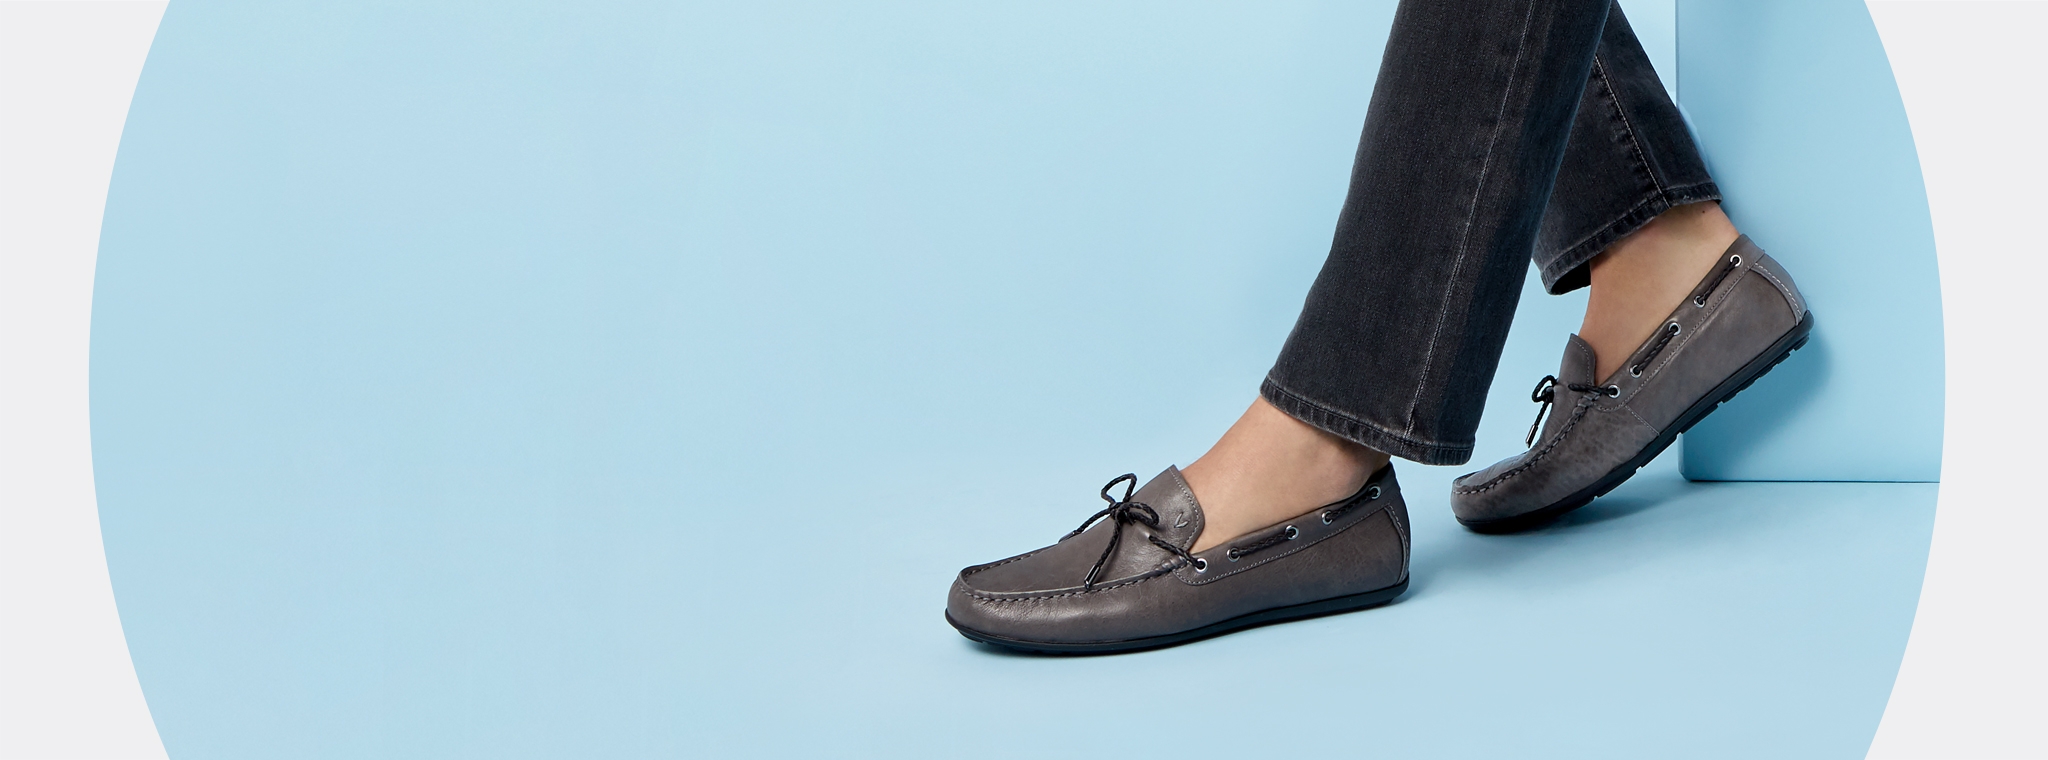 Men's Shoes - Comfortable Shoes for Men 